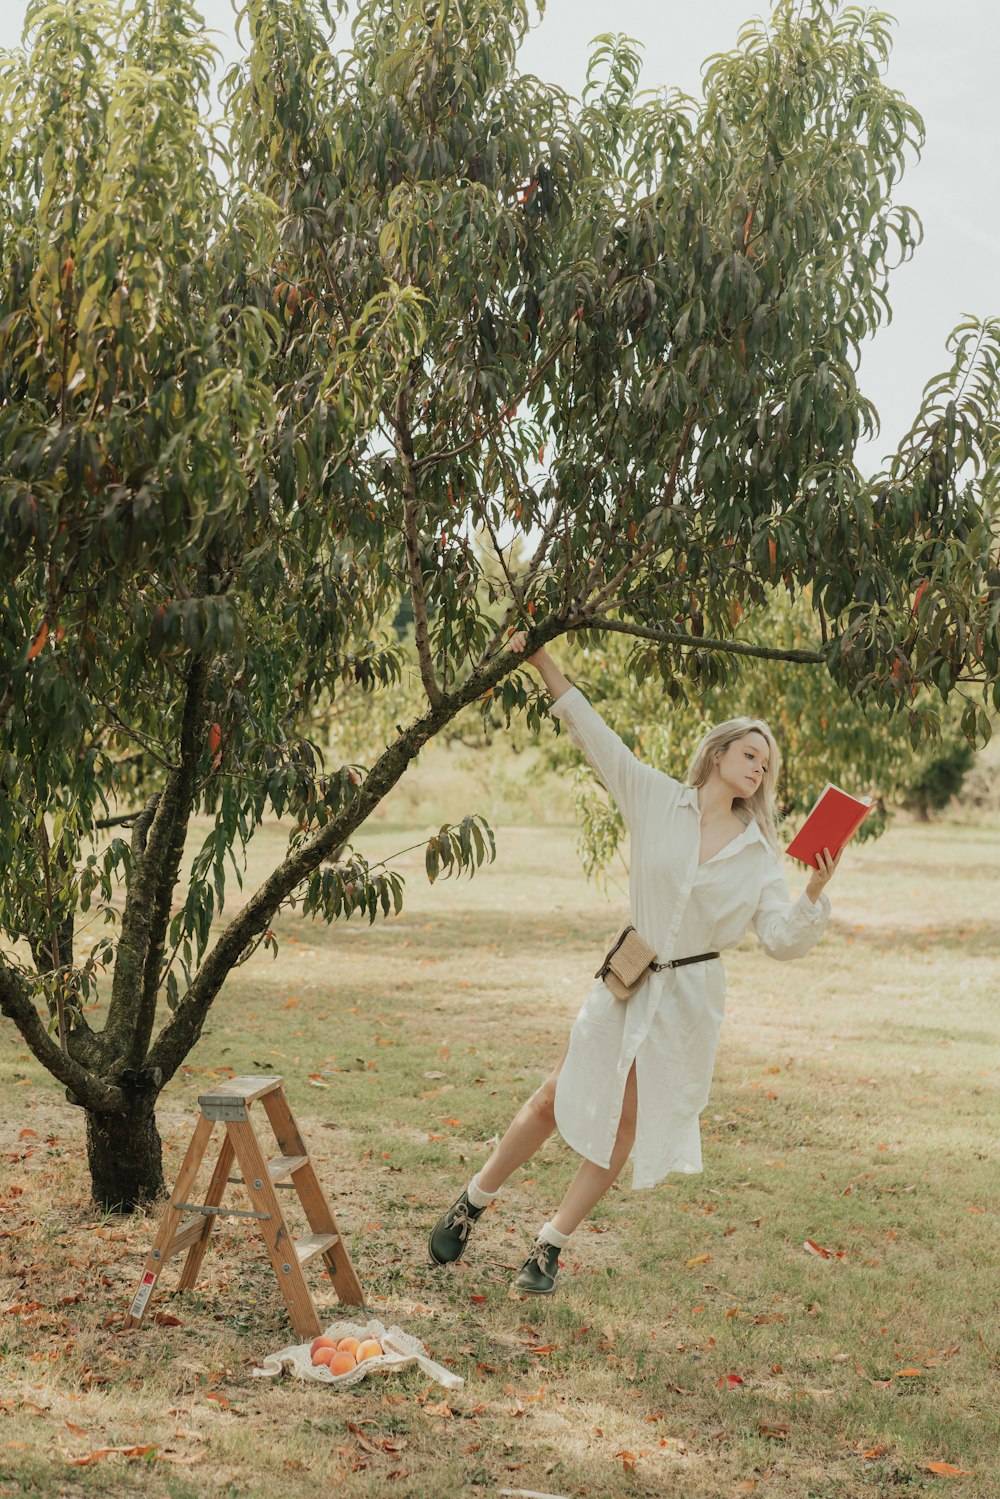 Eine Frau in einem weißen Kleid schwingt auf einem Baum